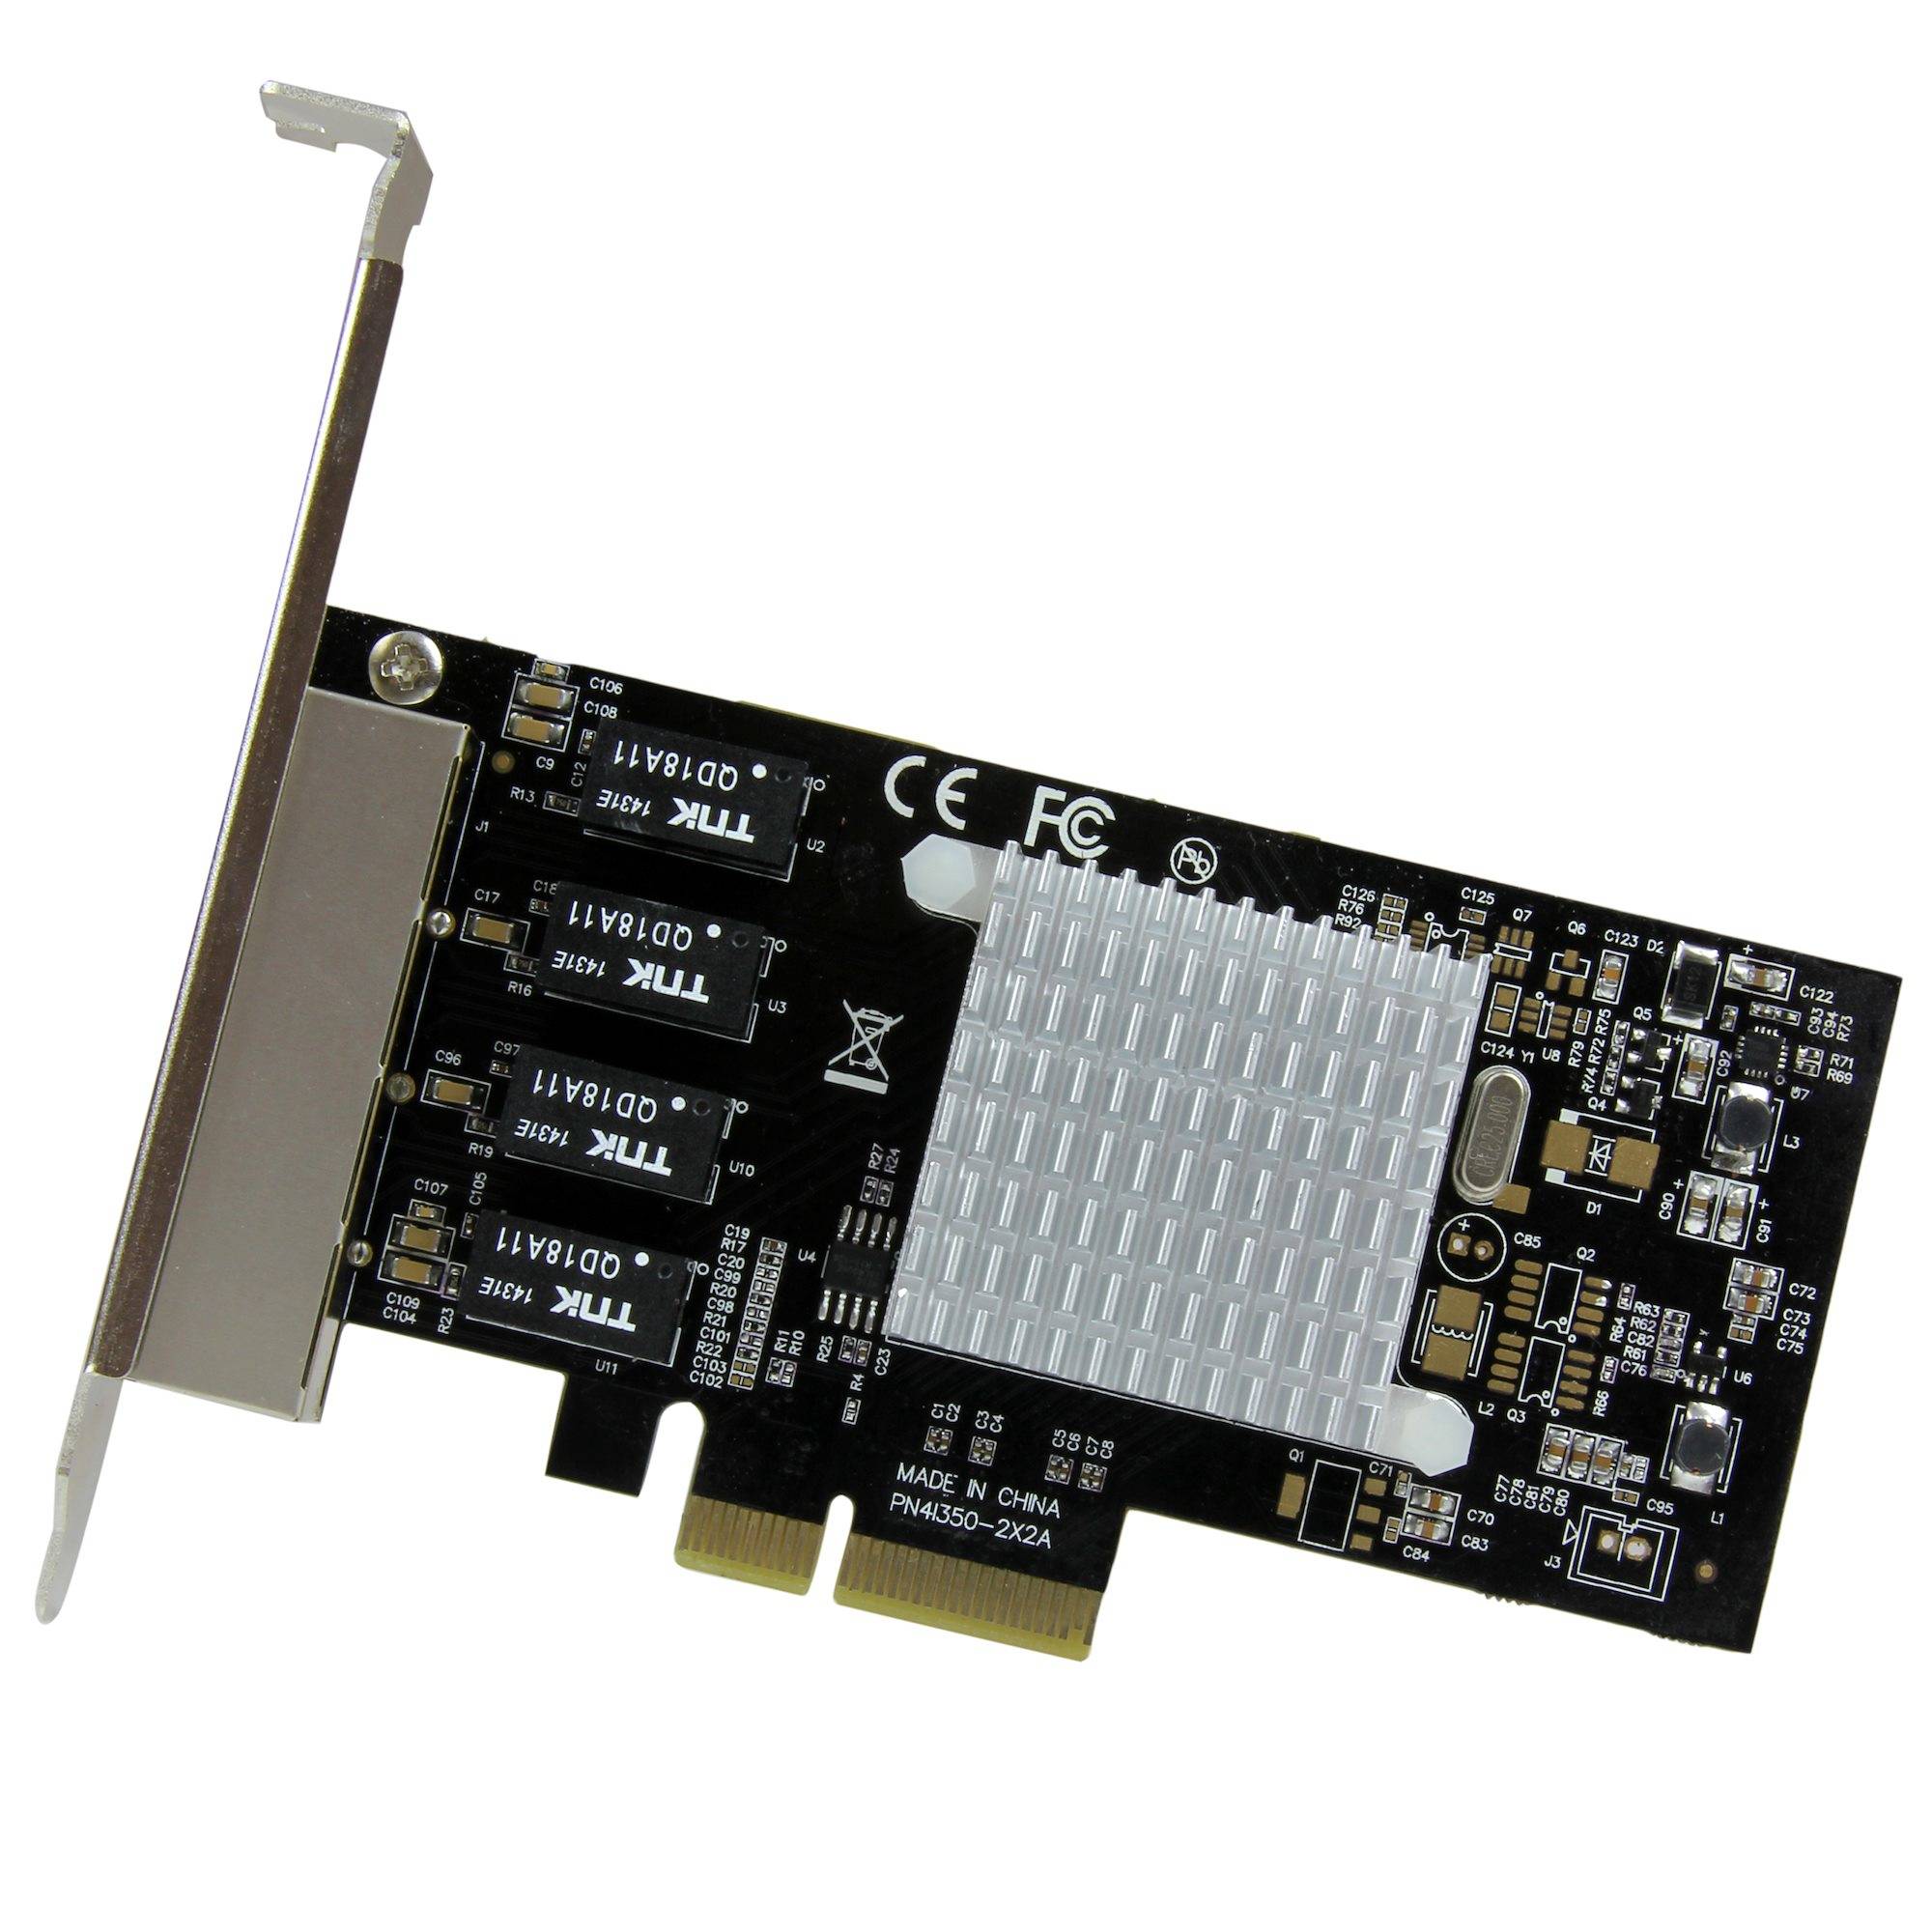 Rca Informatique - image du produit : 4PORT GIGABIT NETWORK ADAPTER CARD W/ INTEL I350-AM4 CHIP PCIE